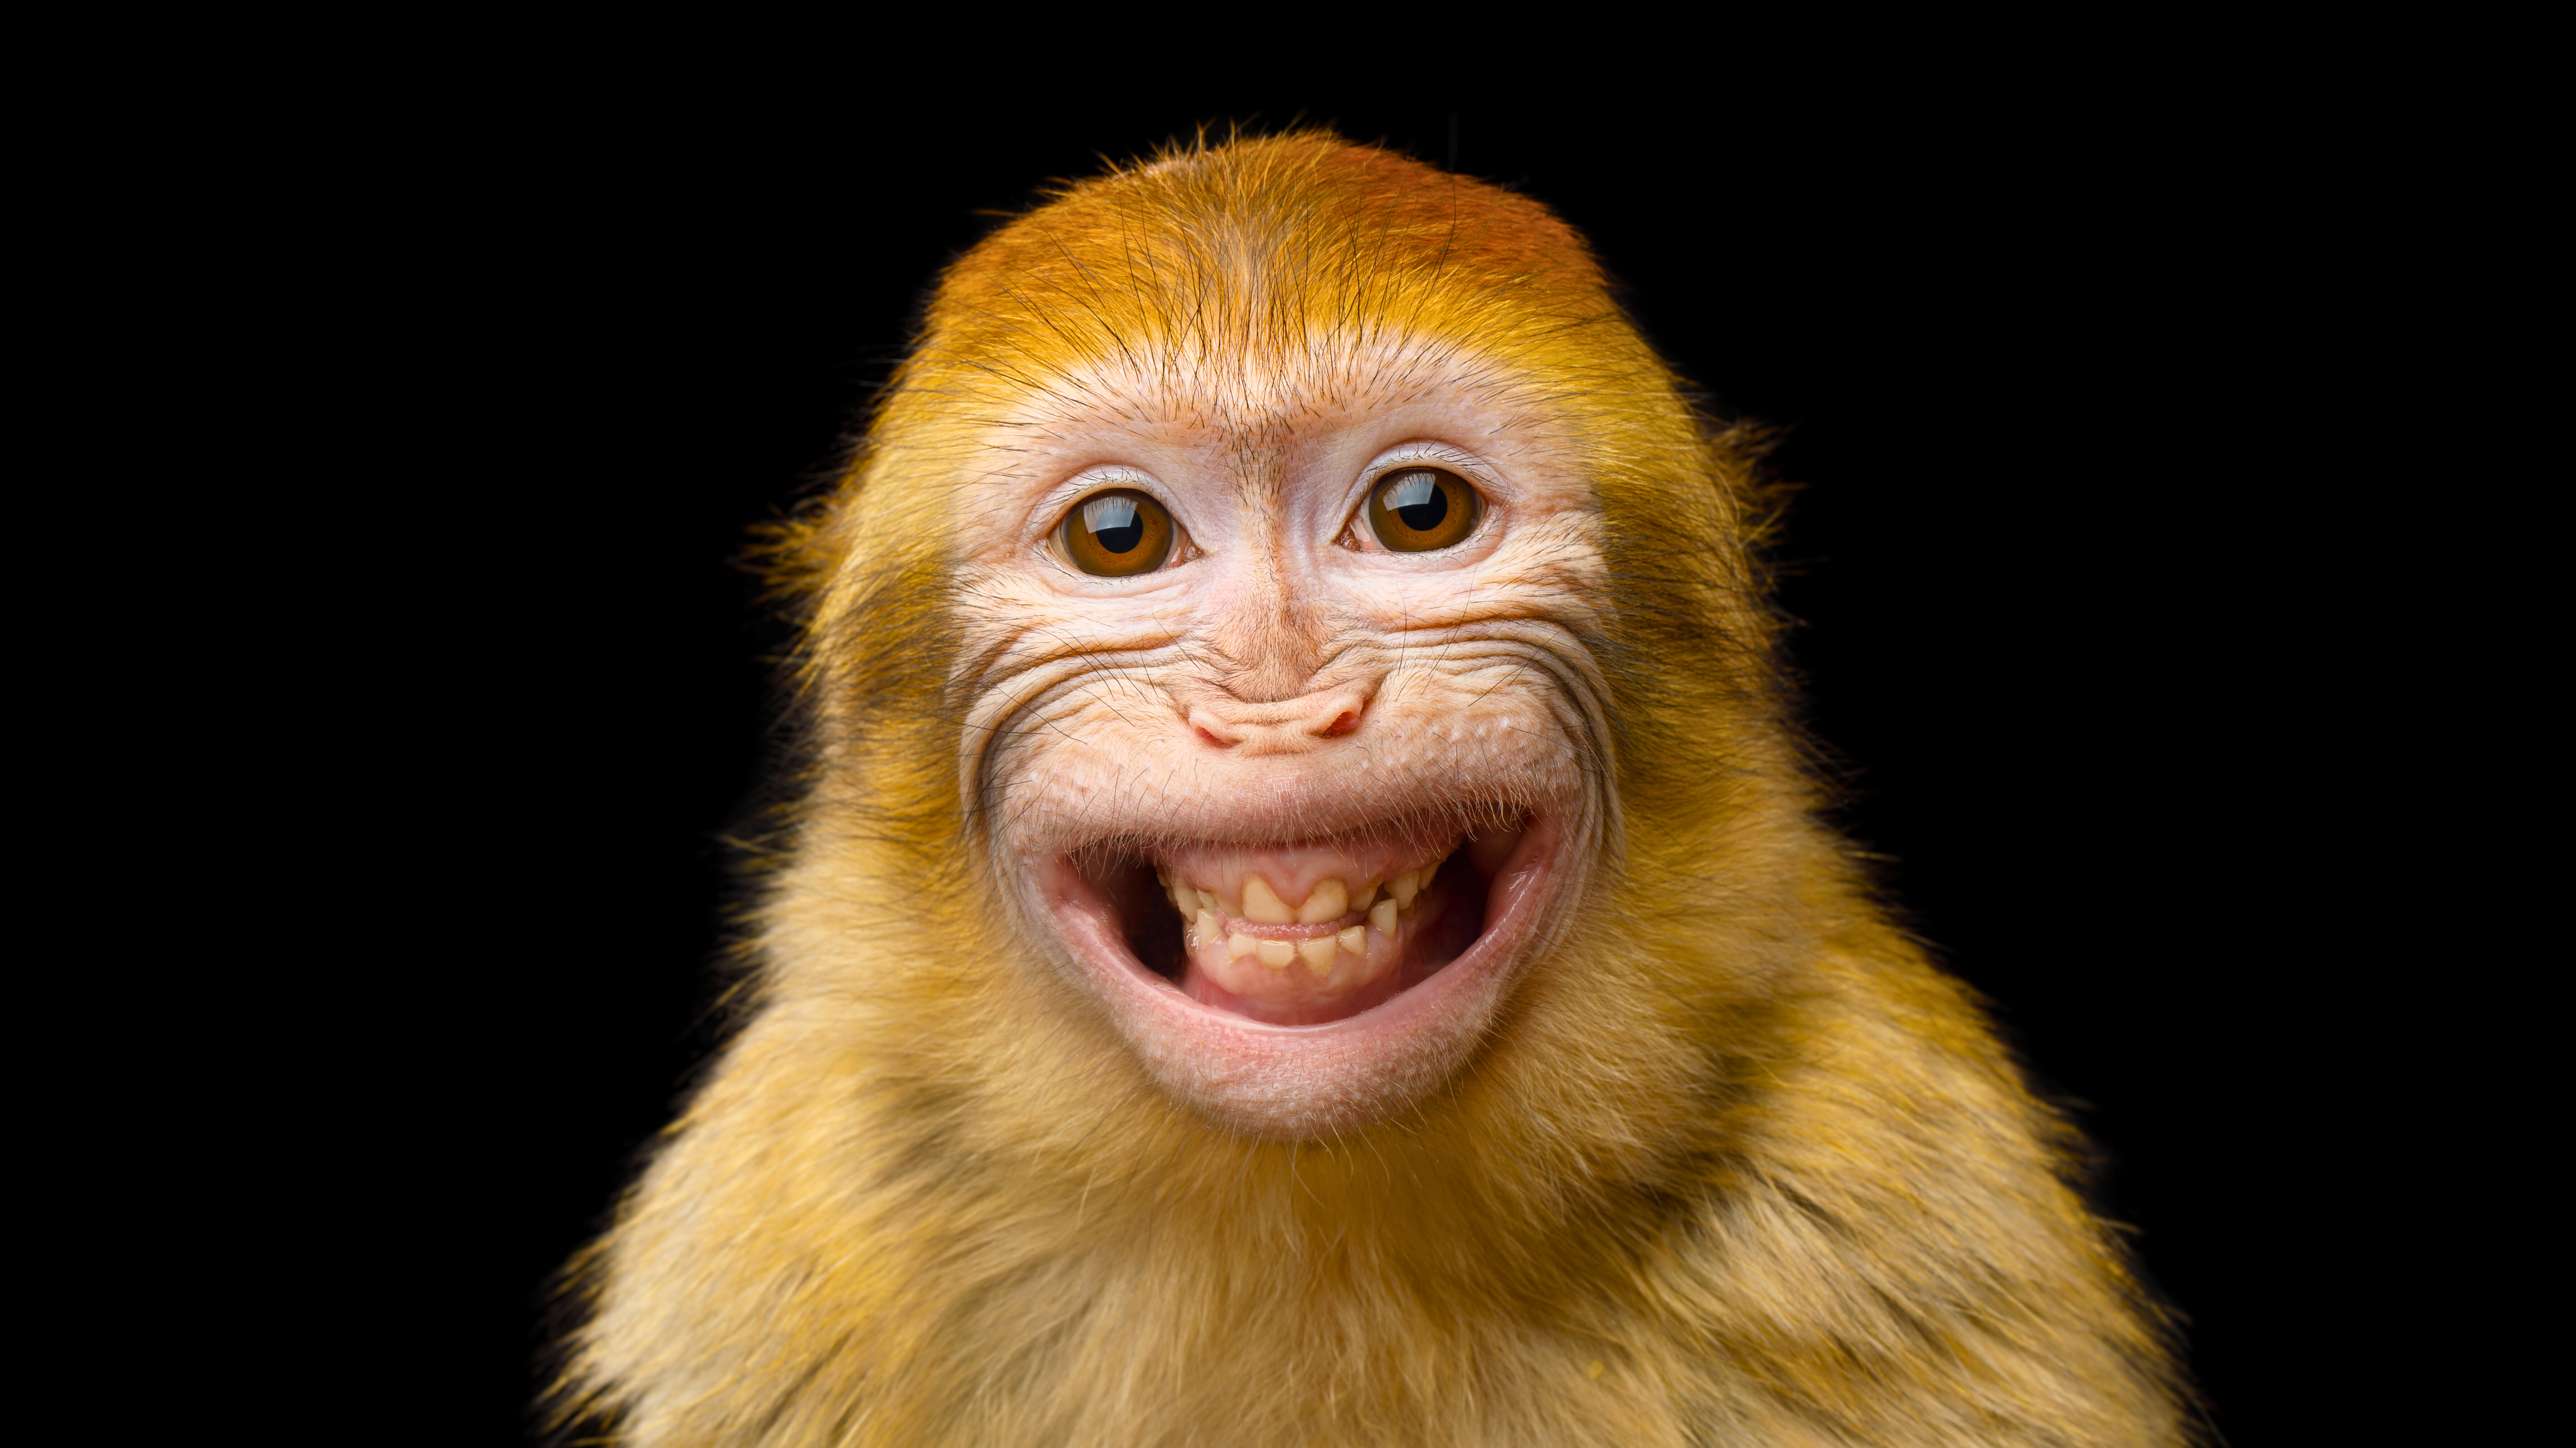 Ce macaque (Macaca sylvanus) souriant malicieusement fait partie des genres de primates chez qui la masturbation a été documentée. Celle-ci a été observée, en ce qui concerne les mâles, chez au moins 70 % des genres de primates, et, en ce qui concerne les femelles, chez au moins 42 % des genres. © seregraff, Adobe Stock